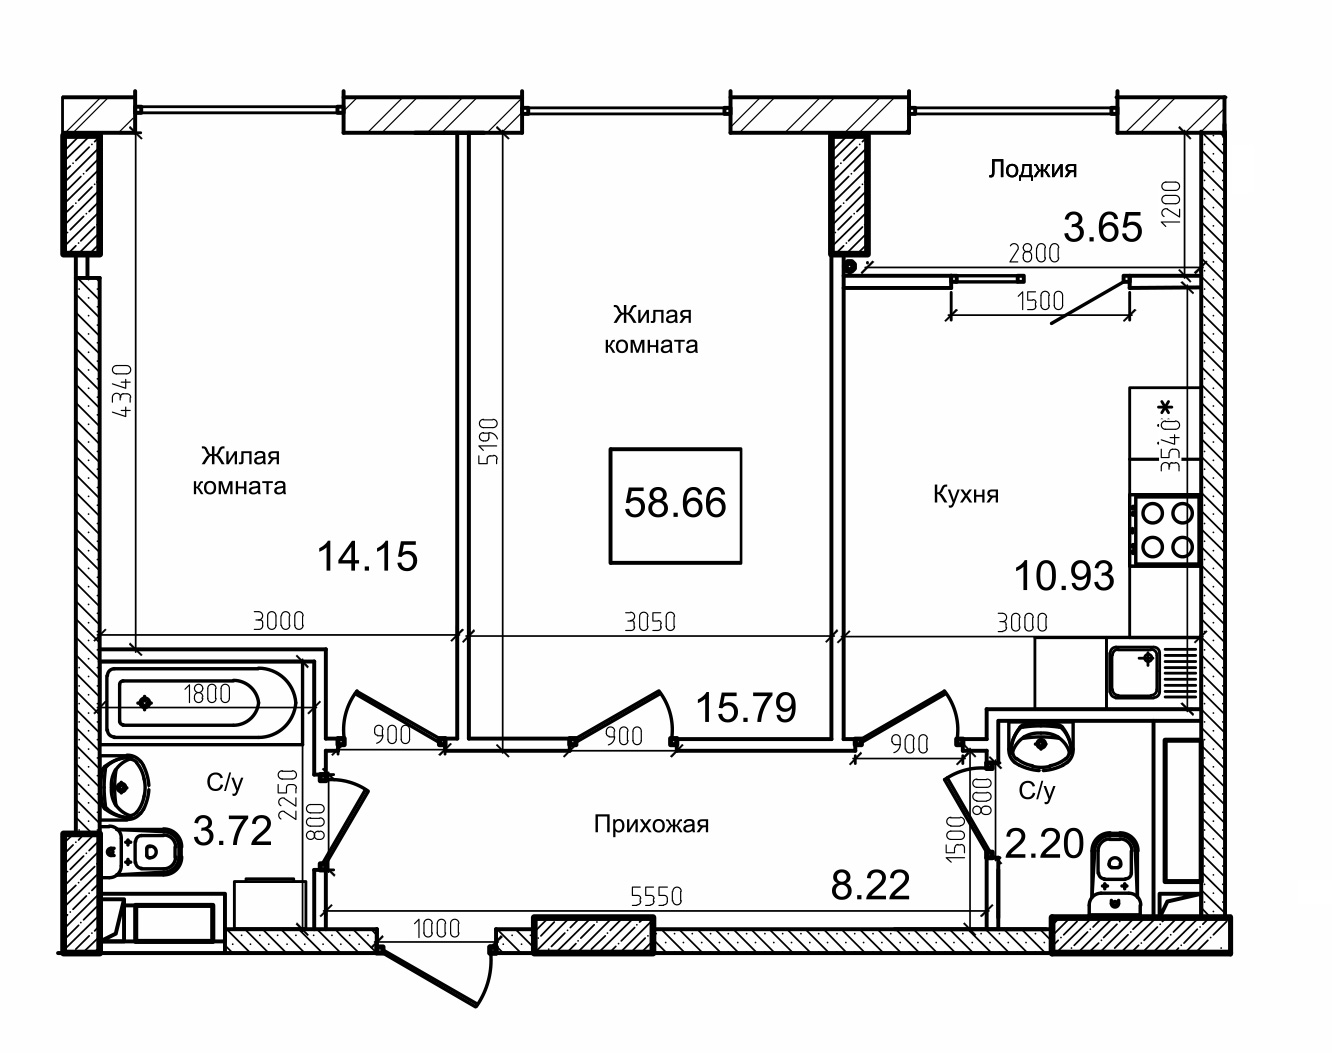 Планування 2-к квартира площею 59.1м2, AB-09-01/00006.